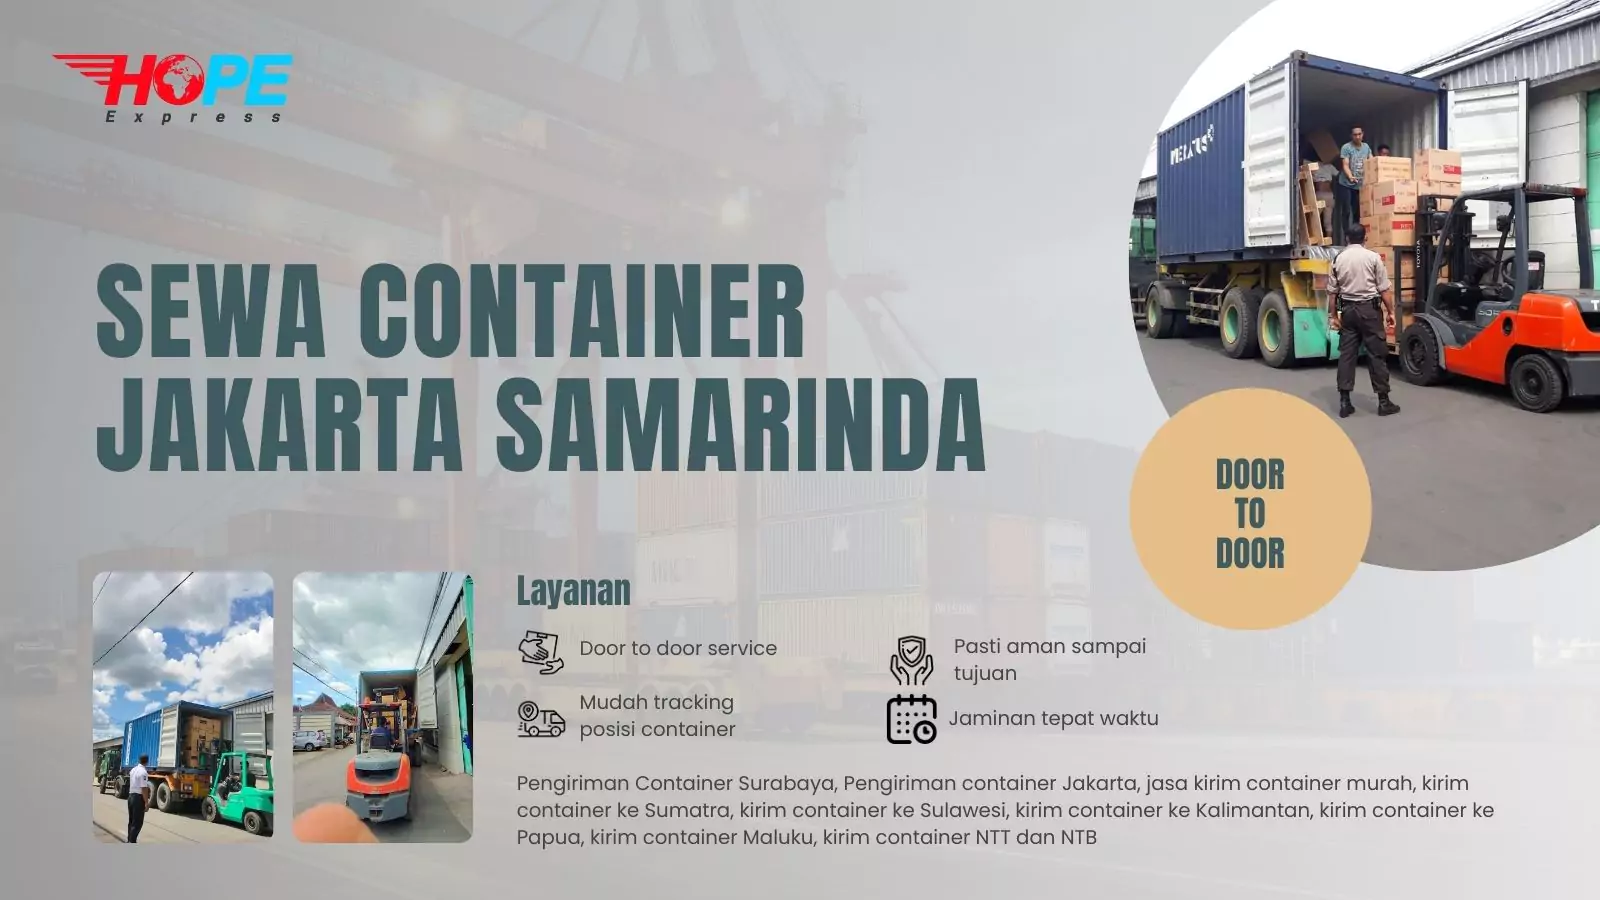 Sewa Container Jakarta Samarinda